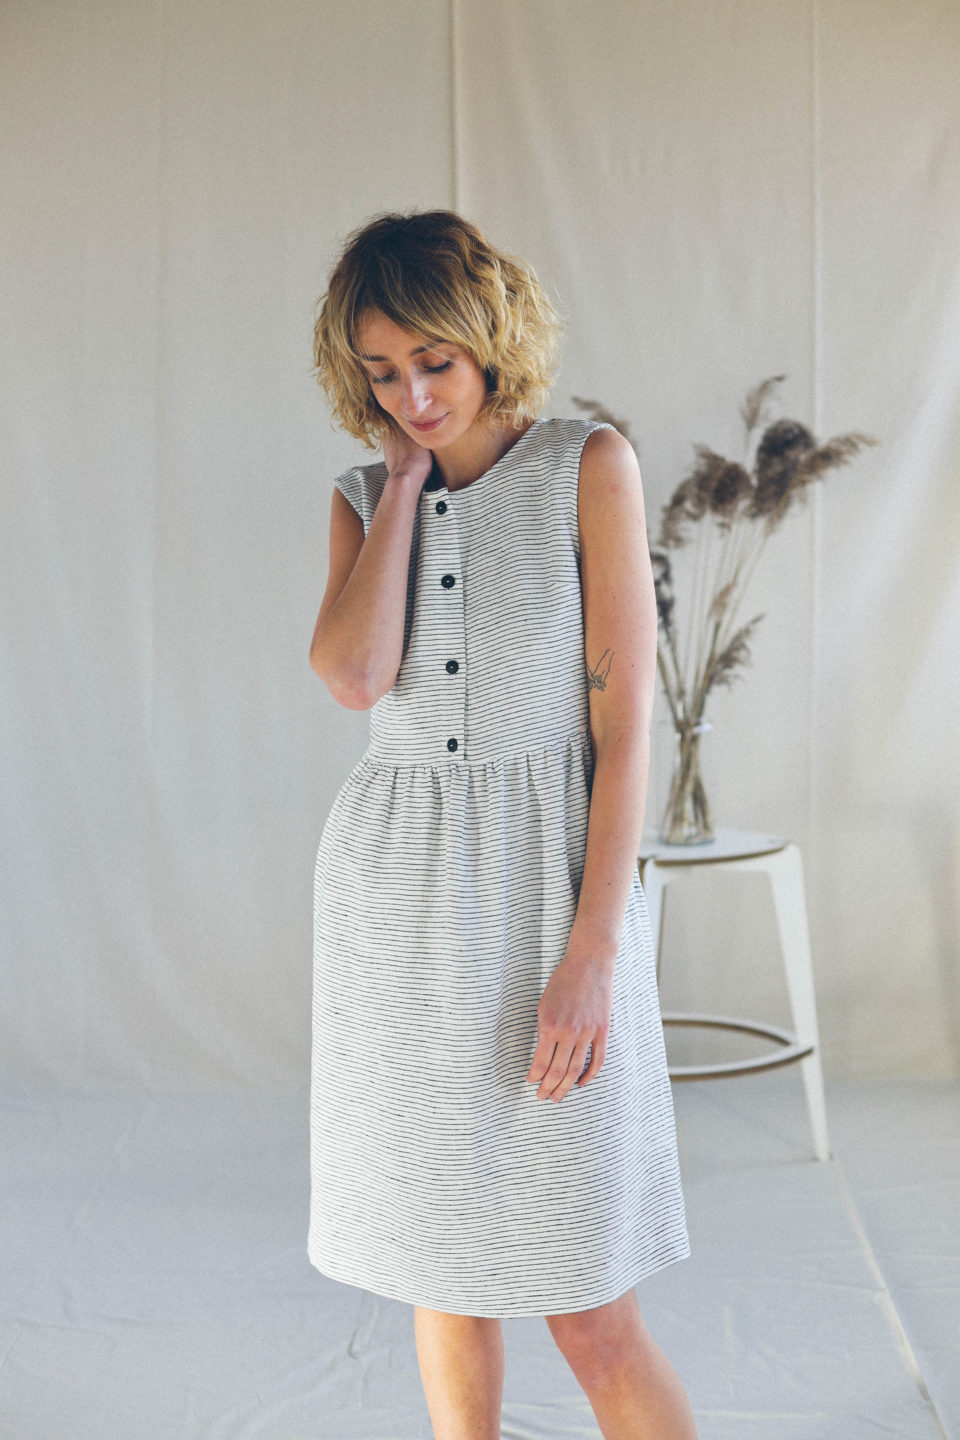 Adjustable Straps Summer Linen Dress ELOISE in Ivory Color / OFFON